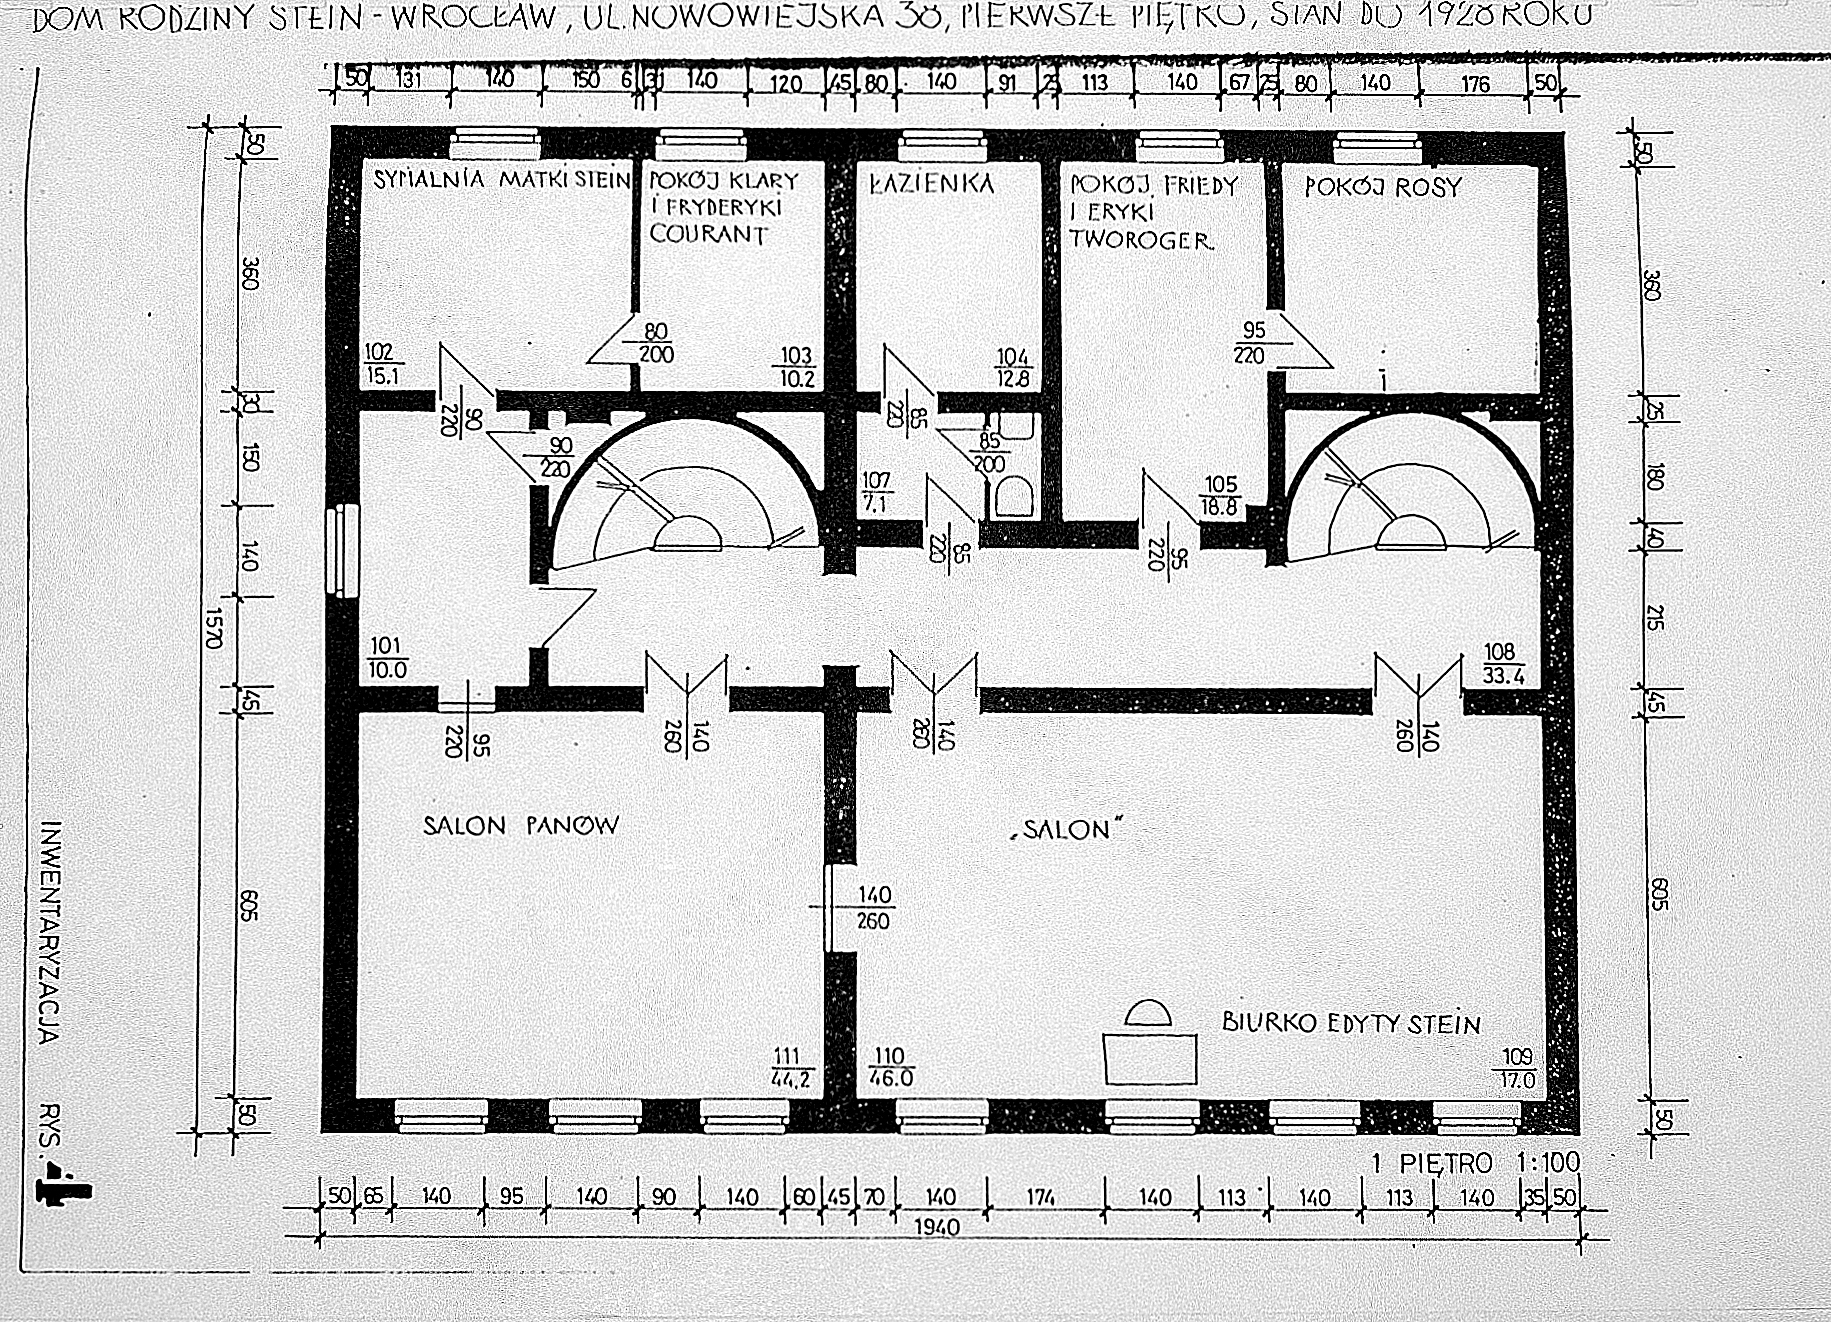 Plan domu Steinów przy Michaelisstrasse 38 we Wrocławiu przed 1928 rokiem, I piętro, archiwum Towarzystwa im. Edyty Stein we Wrocławiu.  